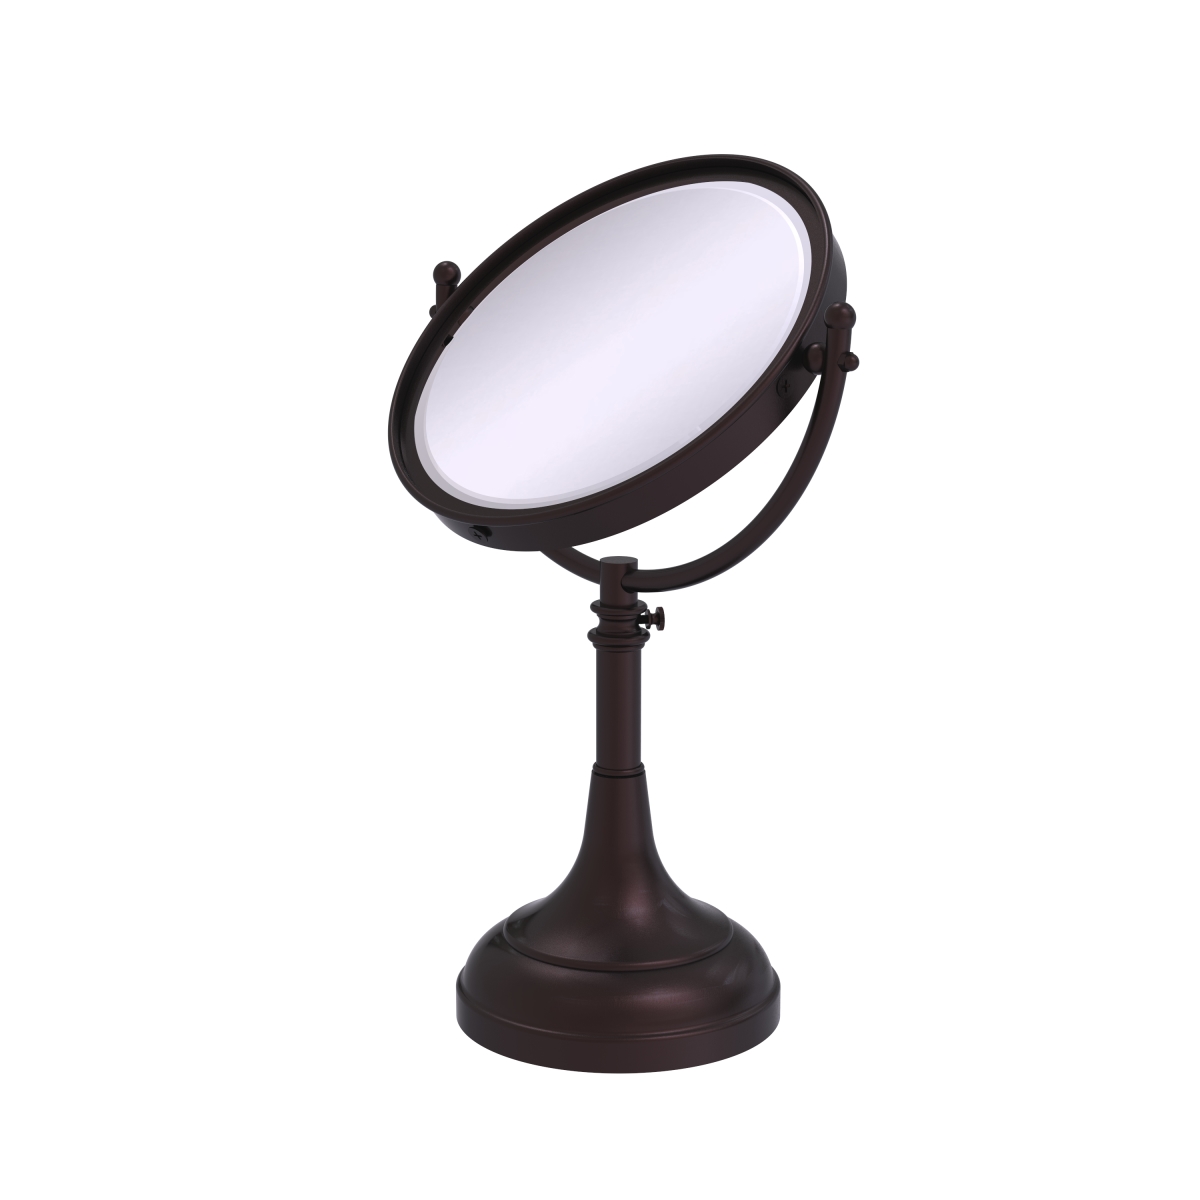 Dm-1-4x-abz Height Adjustable 8 In. Vanity Top Make-up Mirror 4x Magnification, Antique Bronze